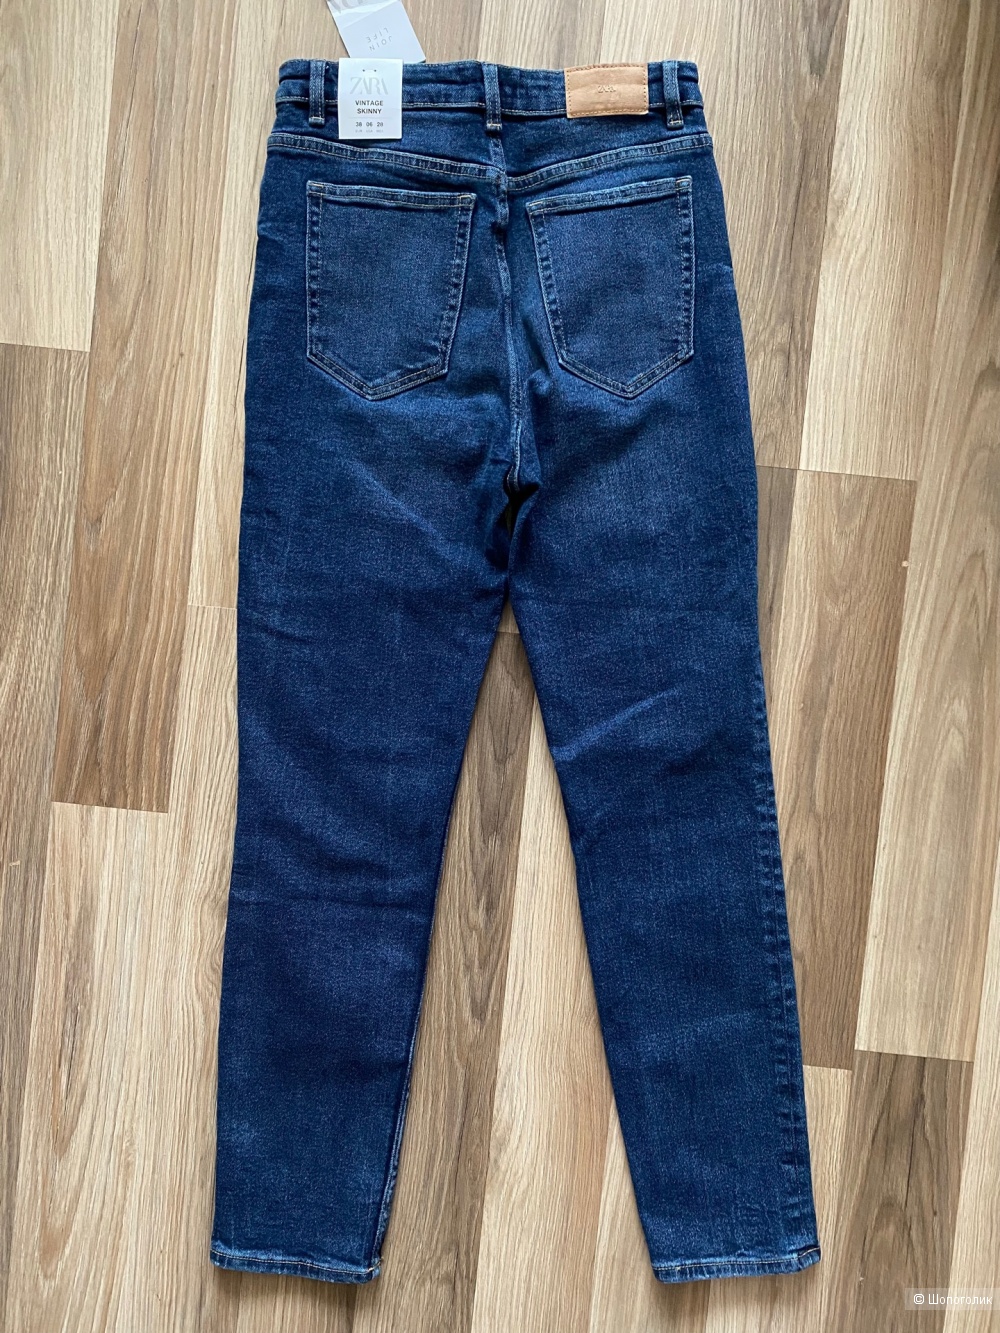 Новые джинсы Zara размер 38 (наш 44-46)